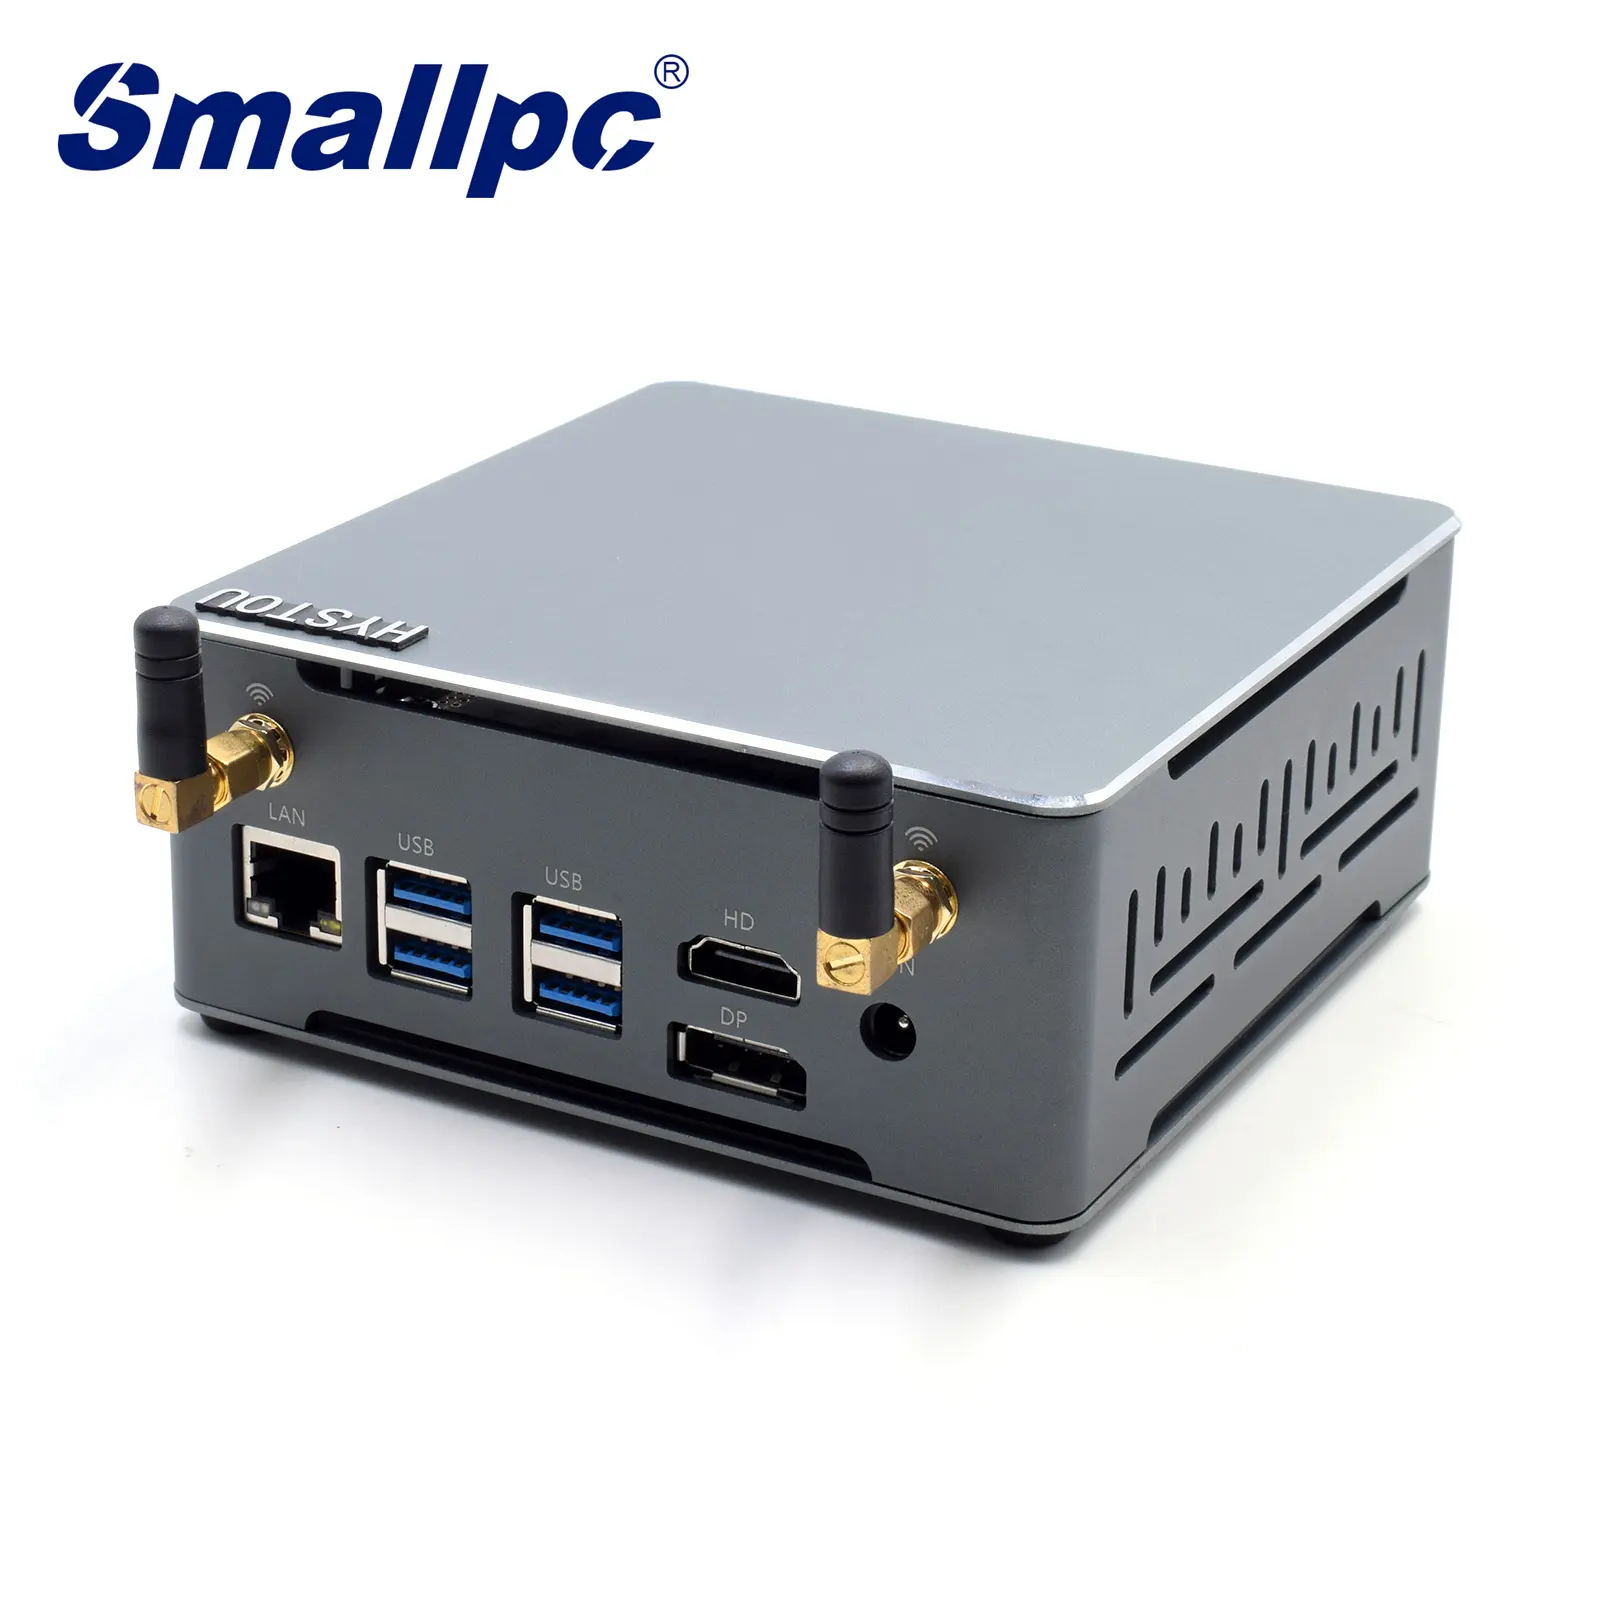 Smallpc 케이스 슬림 케이스 저전력 홈 서버 쿼드 코어 팬 게임용 컴퓨터 AMD R-yzen 7 3700U 미니 PC 게이머